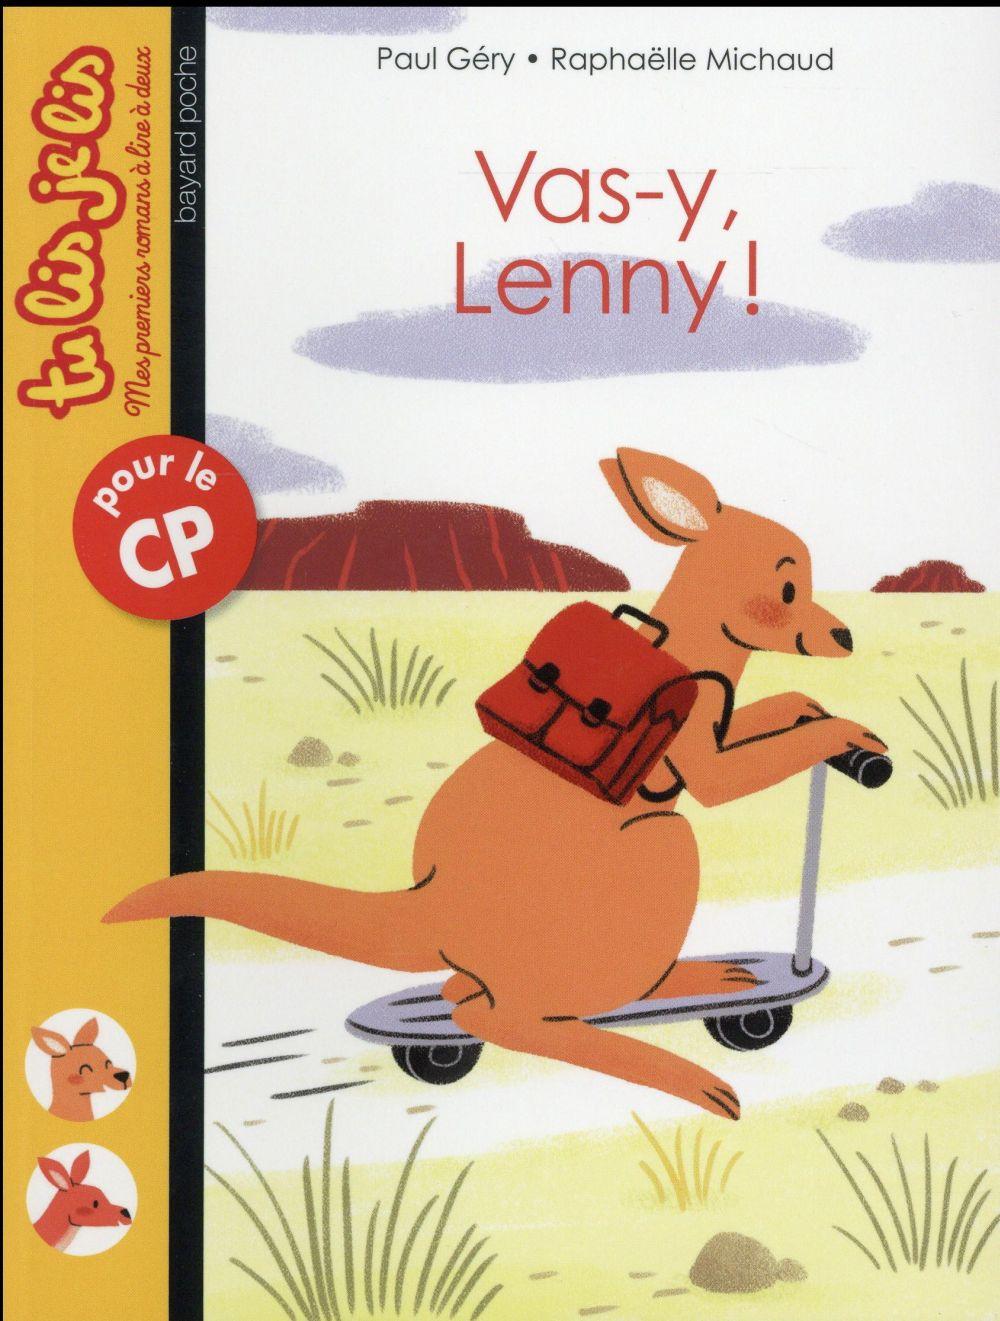 Vente Livre :                                    Vas-y, Lenny !
- Raphaëlle Michaud  - Paul Géry                                     